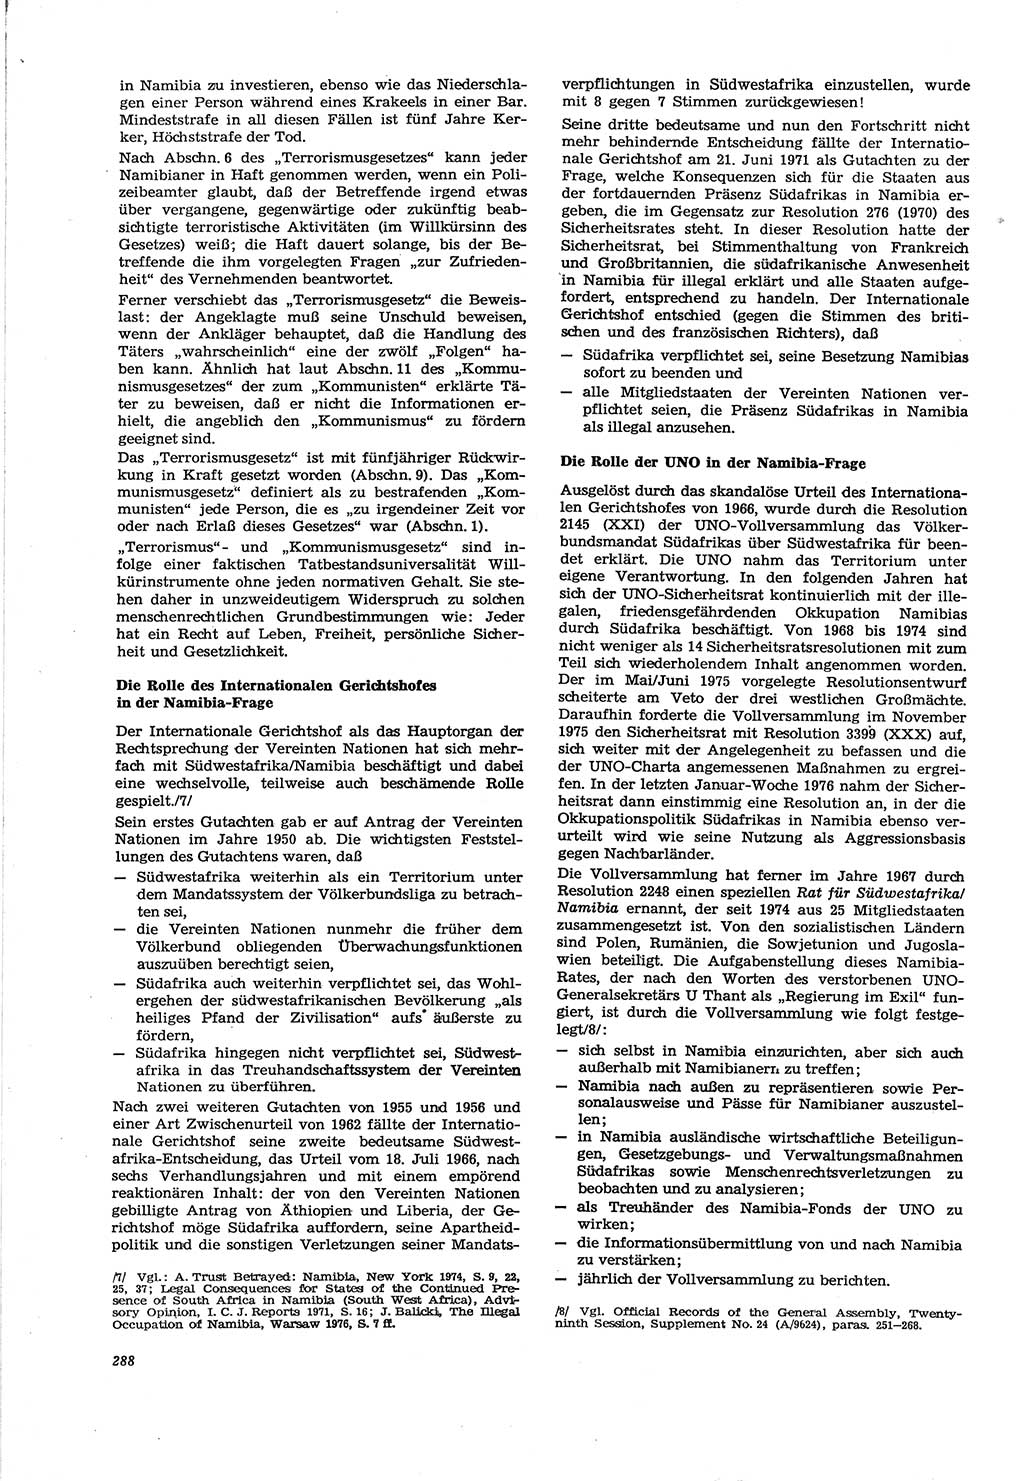 Neue Justiz (NJ), Zeitschrift für Recht und Rechtswissenschaft [Deutsche Demokratische Republik (DDR)], 30. Jahrgang 1976, Seite 288 (NJ DDR 1976, S. 288)